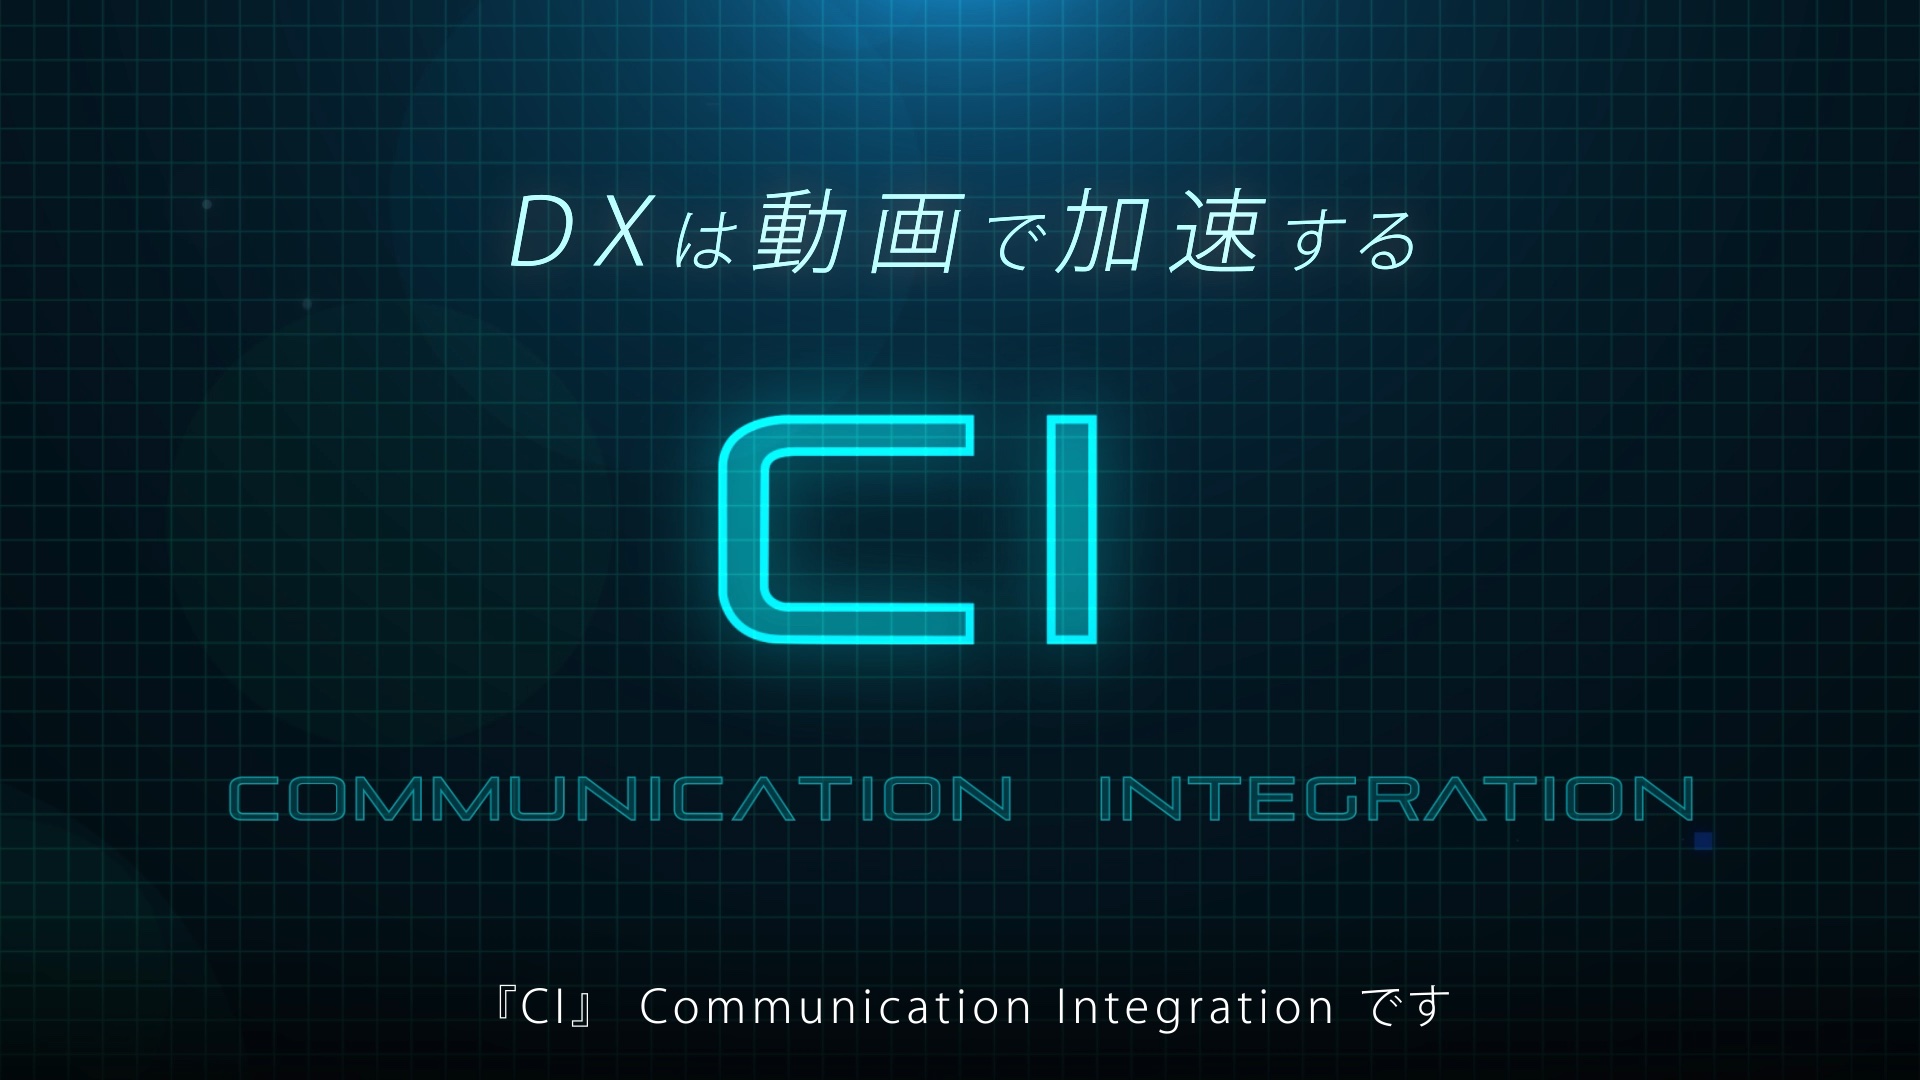 動画と配信で課題解決<br />
CI ( Communication Integration ) について